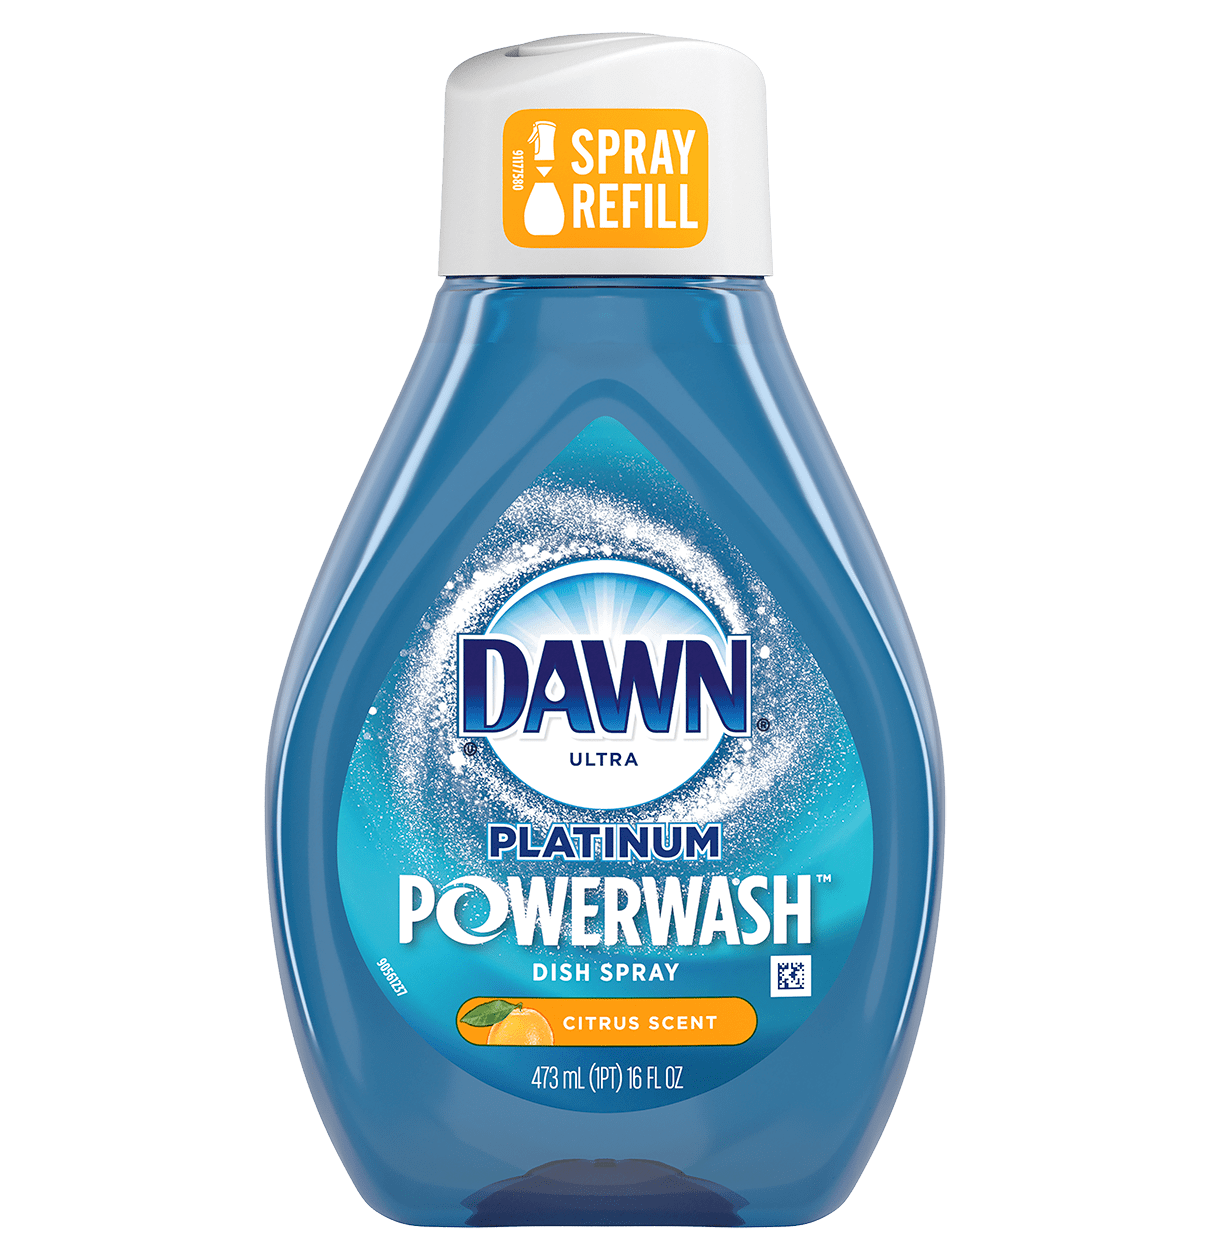 Dawn Platinum Powerwash Dish Spray Refill, Citrus Scent